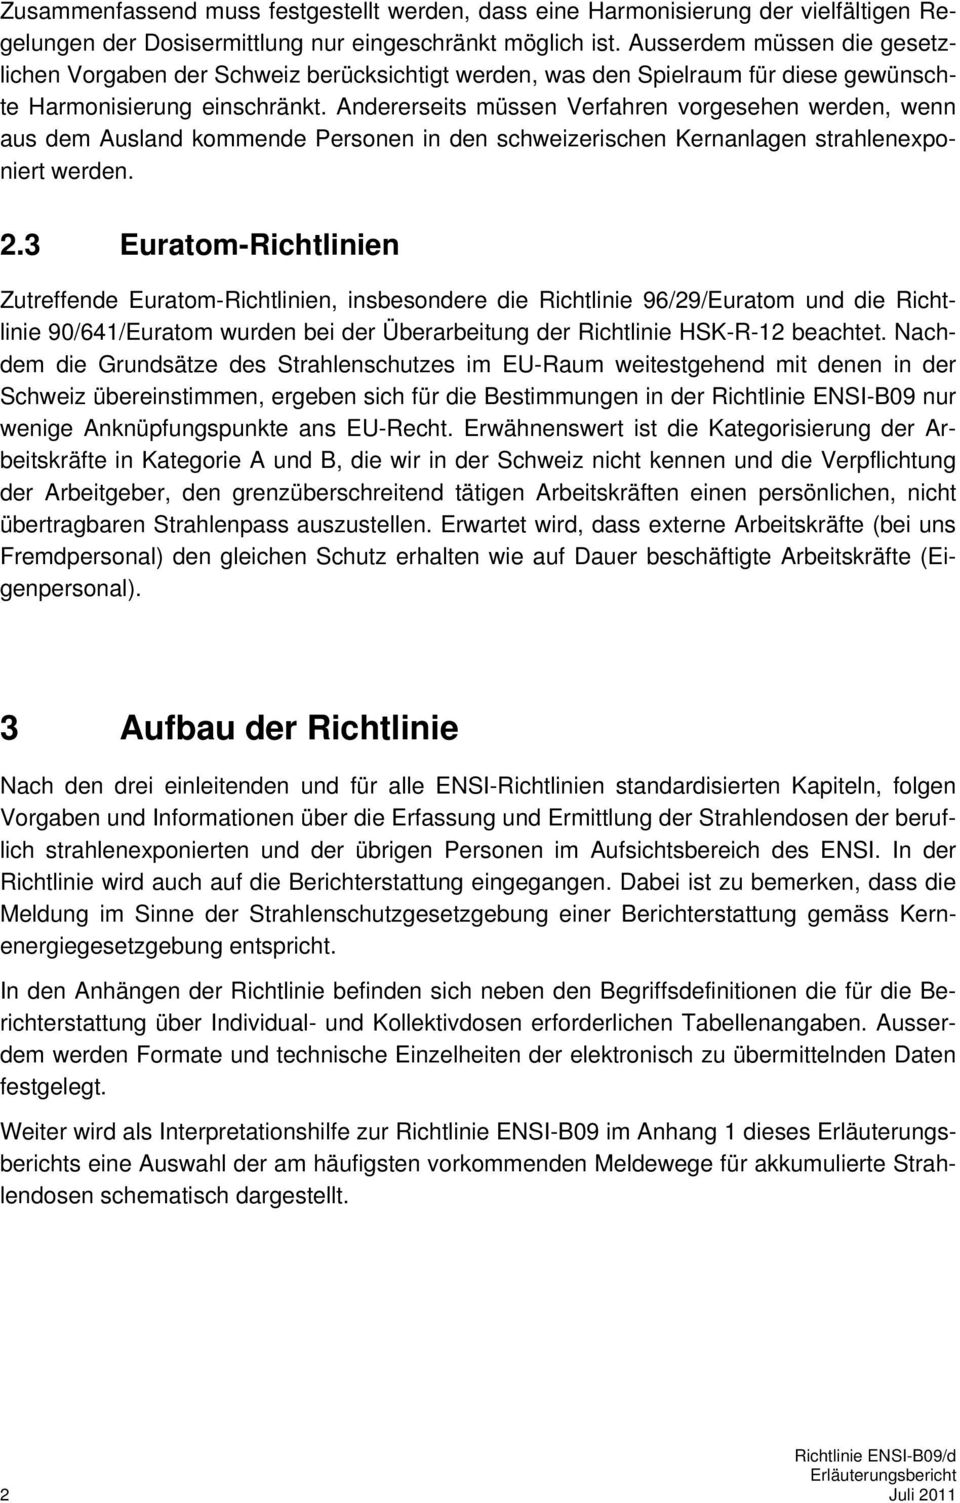 Andererseits müssen Verfahren vorgesehen werden, wenn aus dem Ausland kommende Personen in den schweizerischen Kernanlagen strahlenexponiert werden. 2.